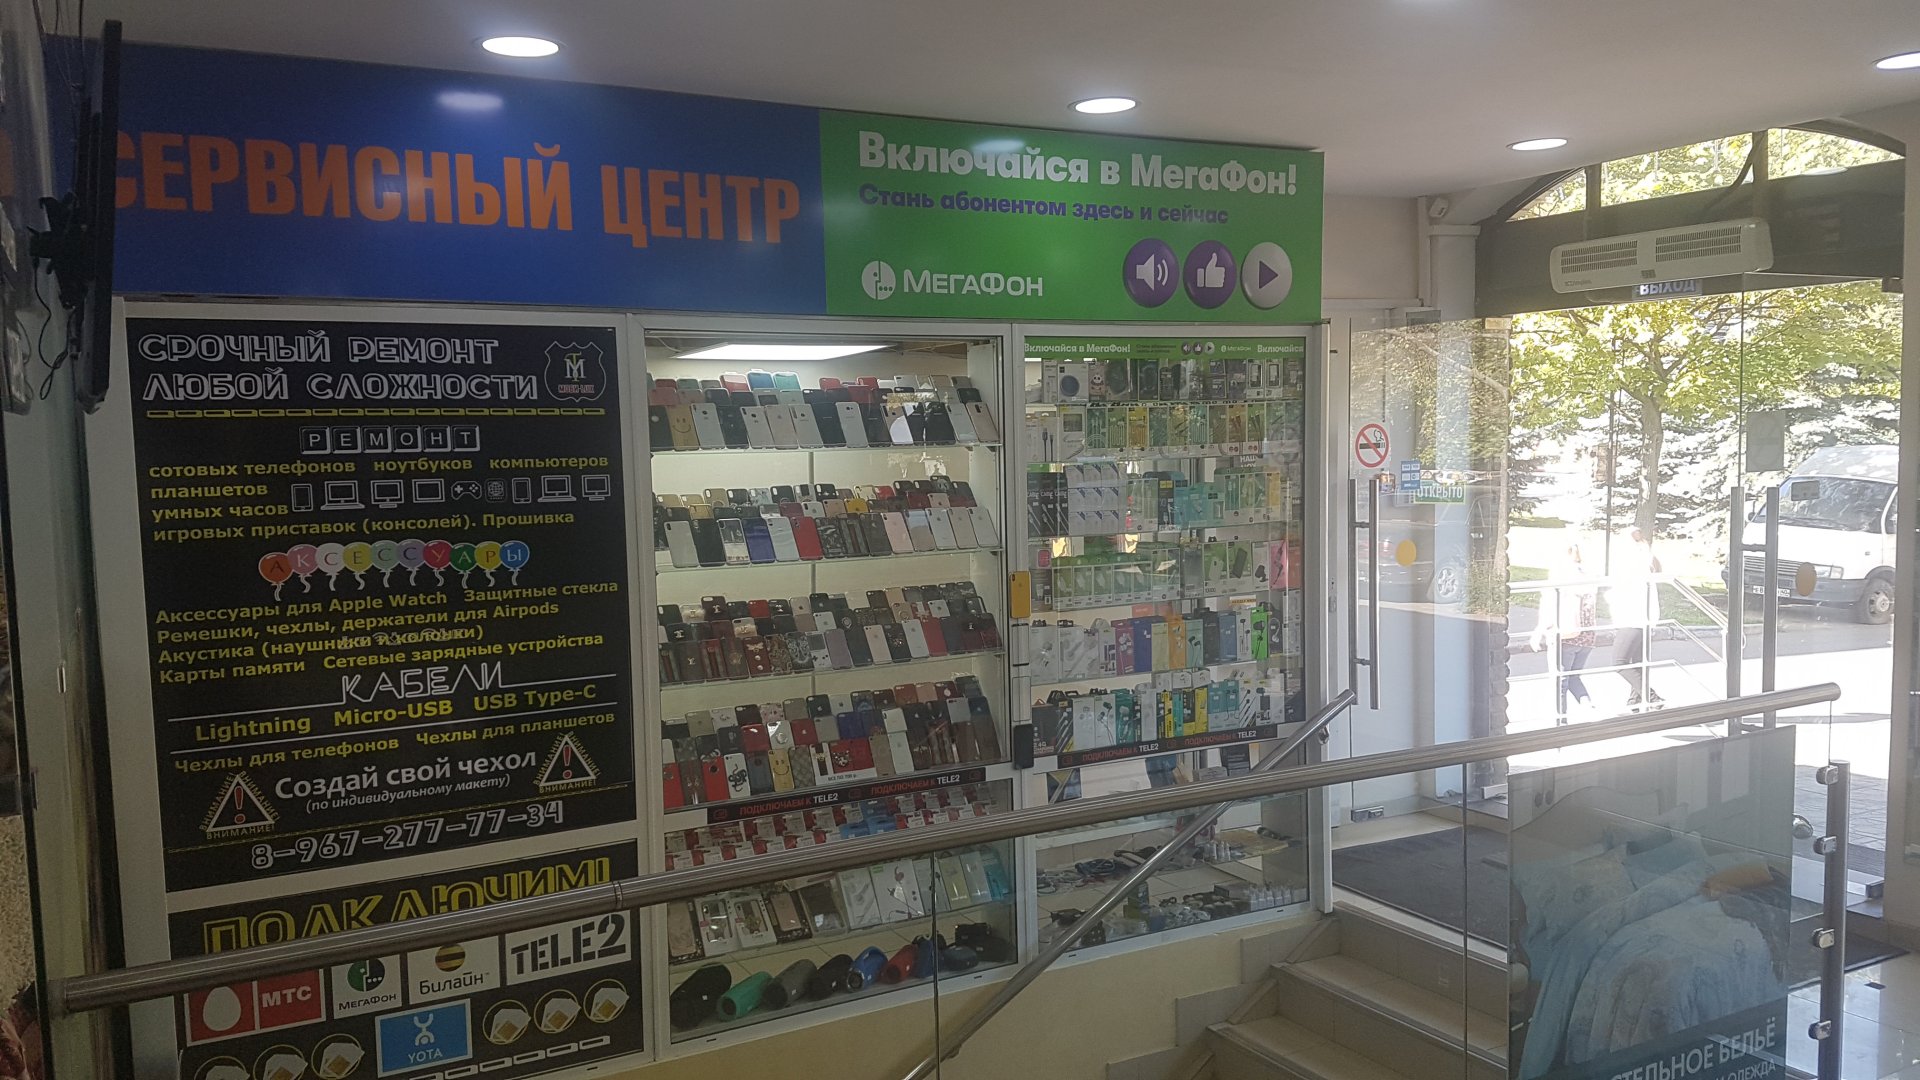 Моби-Luxe, сервисный центр по ремонту телефонов, улица Каховка, 19 к1, 1 этаж